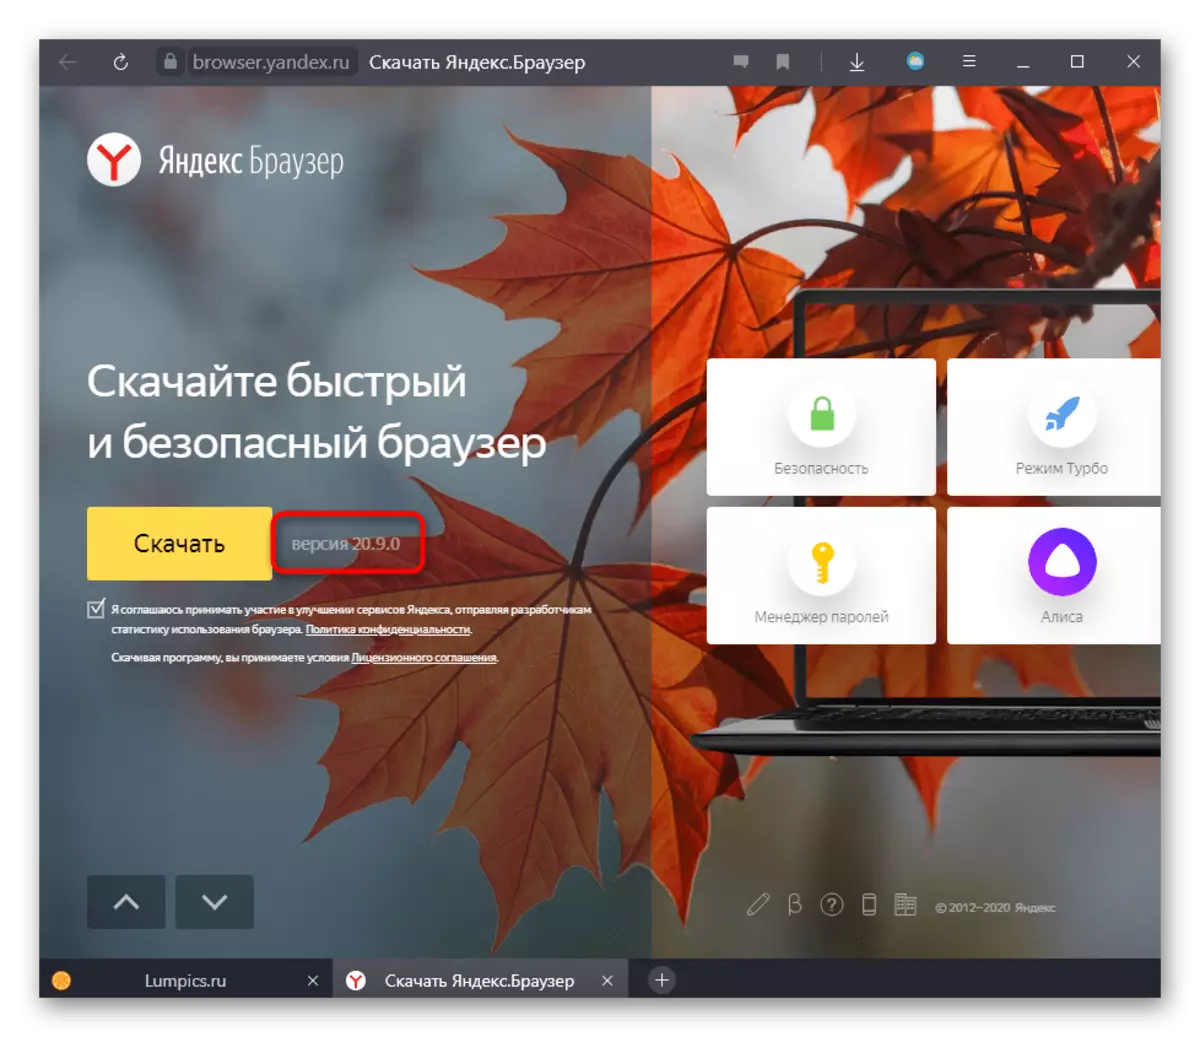 په رسمي ویب پا on ه کې د Yandex.bauster نسخه چیک کړئ